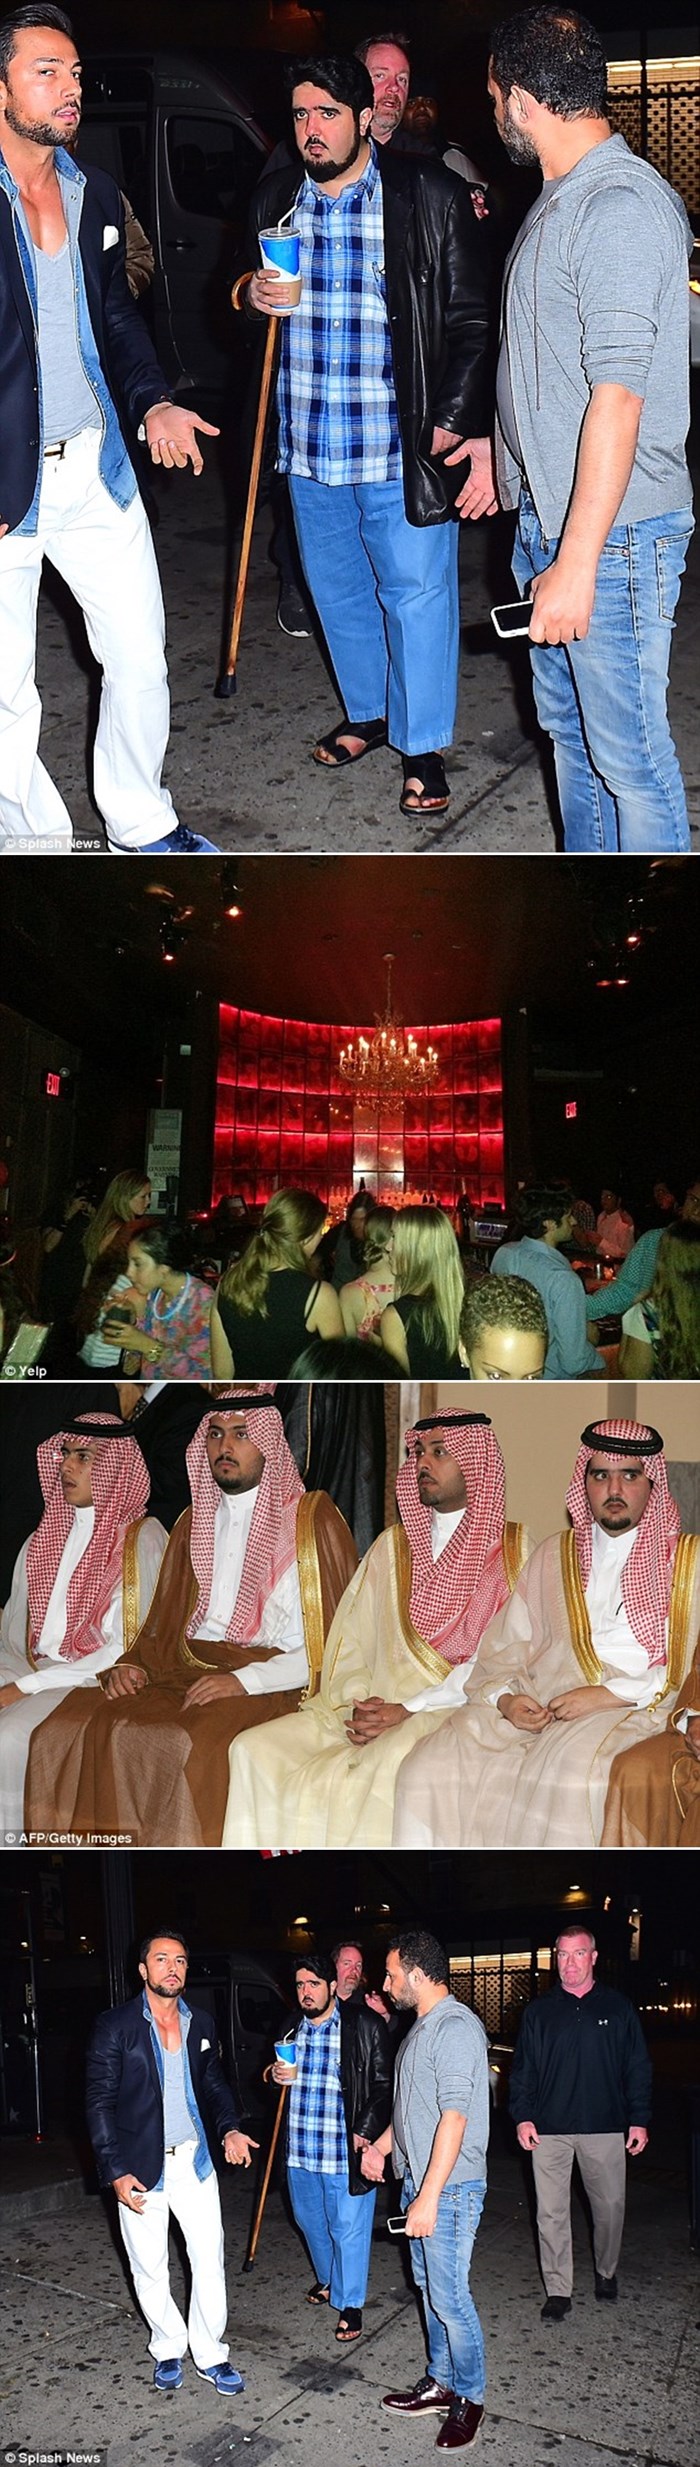 MEGABOGATI saudijski princ uhvaćen u dronjcima usred noćnog kluba!